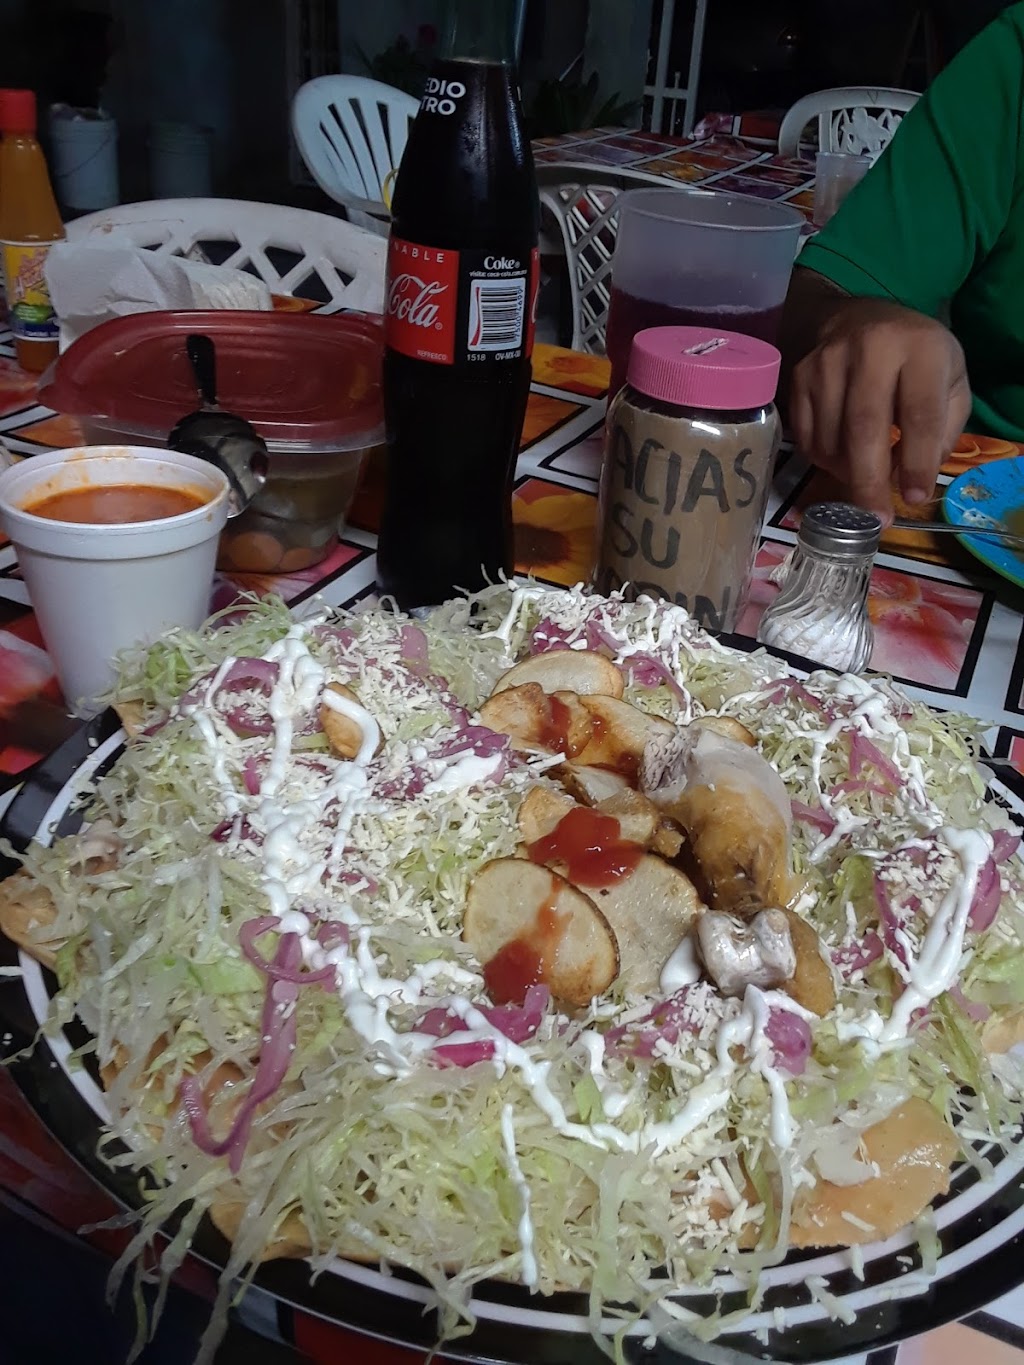 Cenaduria Vicky | C. Pda. Hacienda Los Venados 25514, Terrazas del Valle, 22246 Tijuana, B.C., Mexico | Phone: 664 185 5451